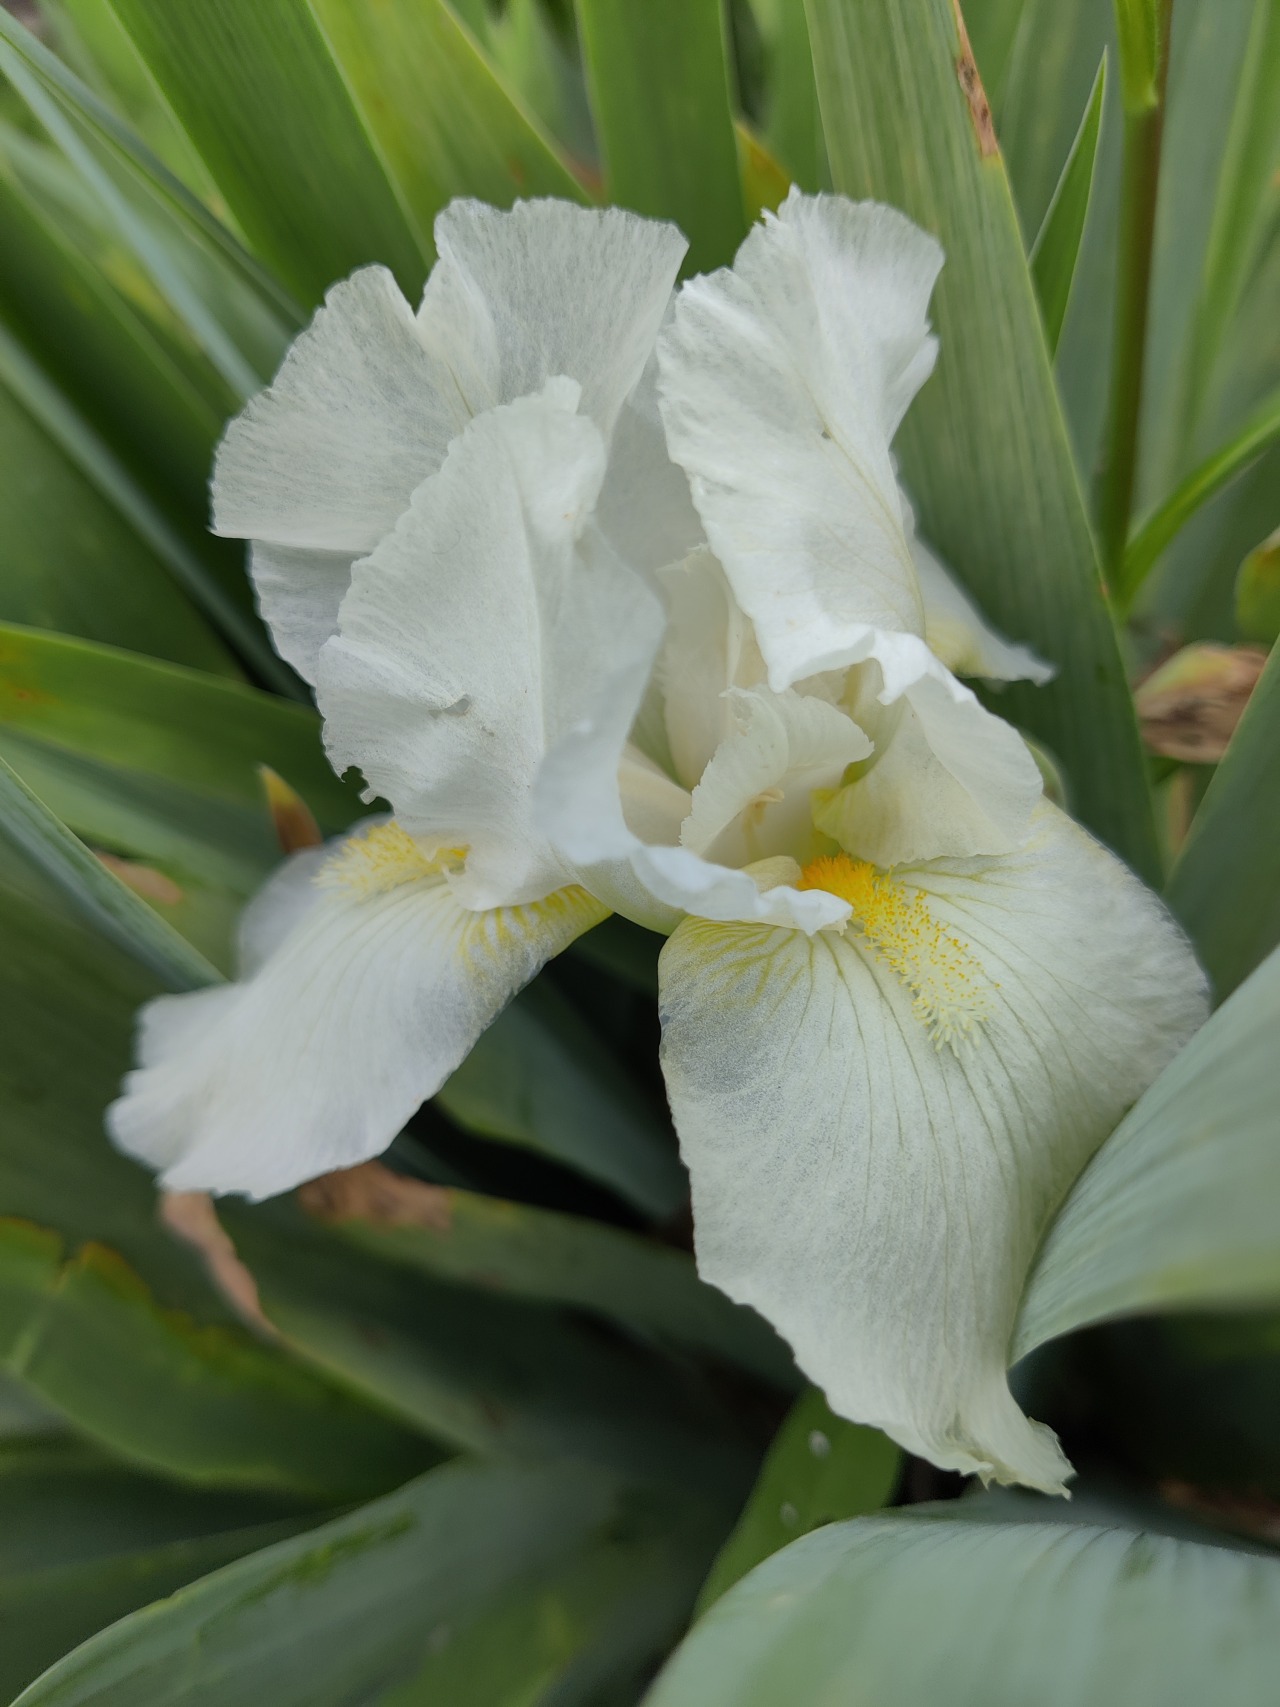 #iris#white flowers#gardening#cottagecore#gardencore